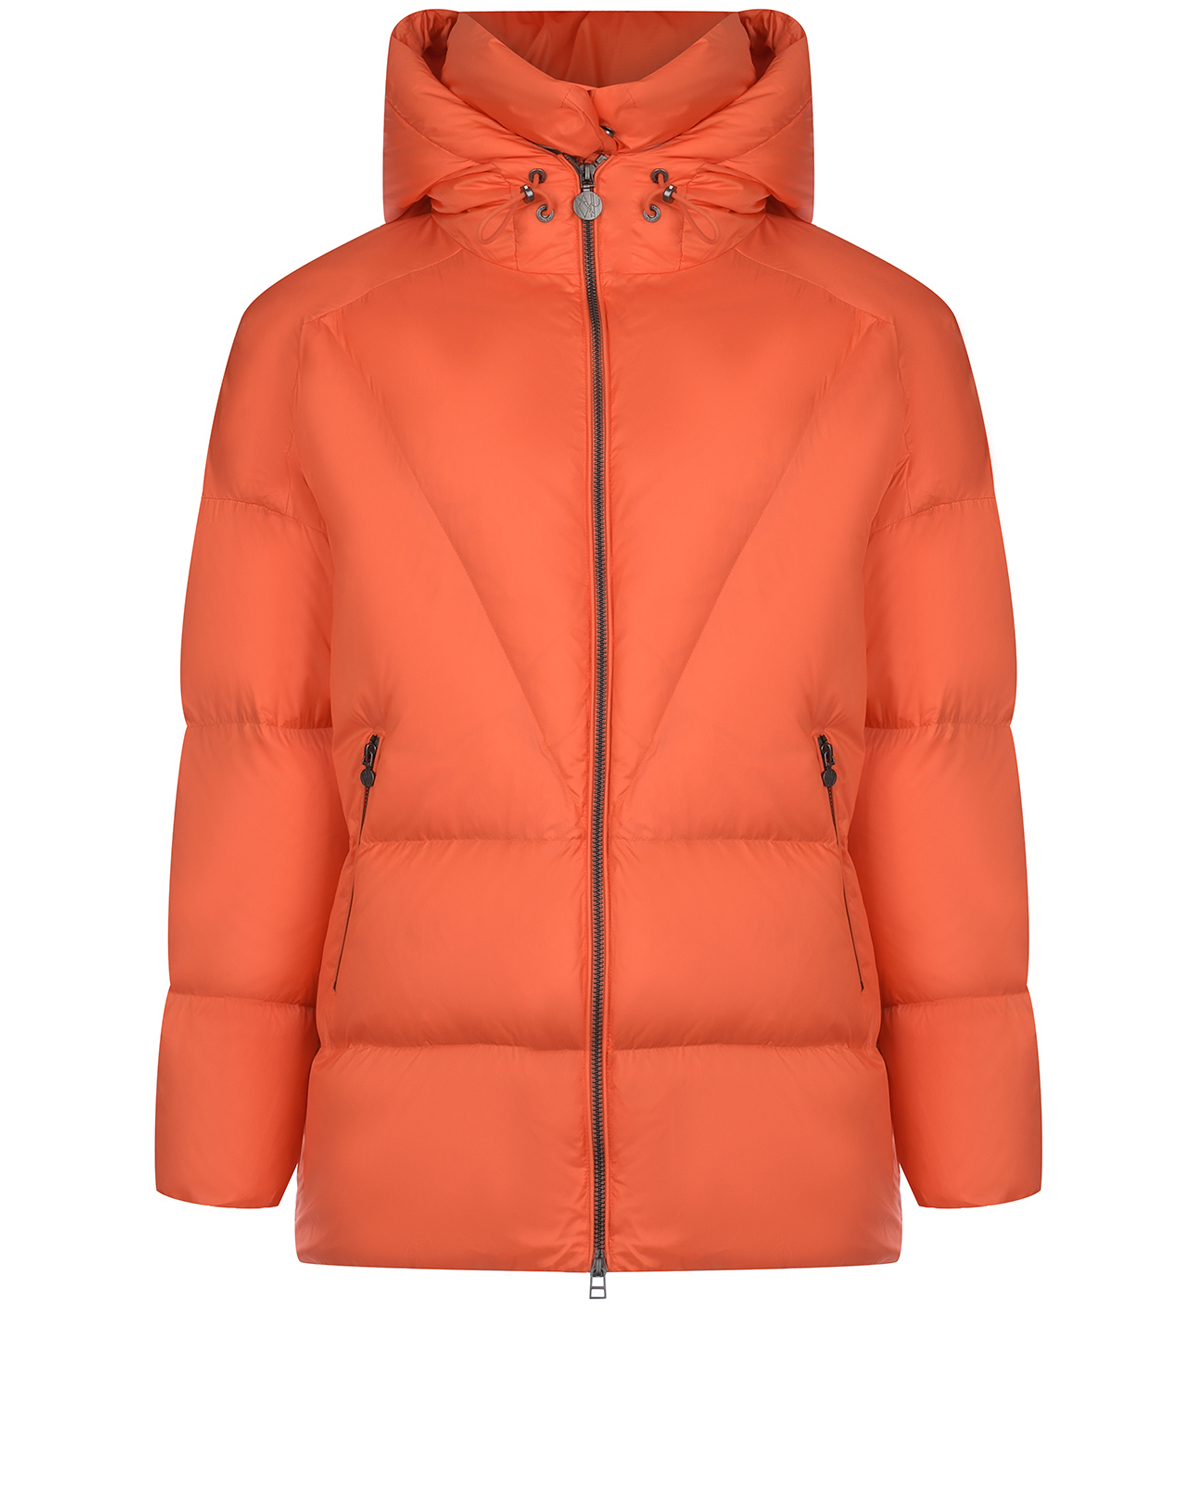 Удлиненная оранжевая куртка с капюшоном Naumi, размер 38, цвет оранжевый